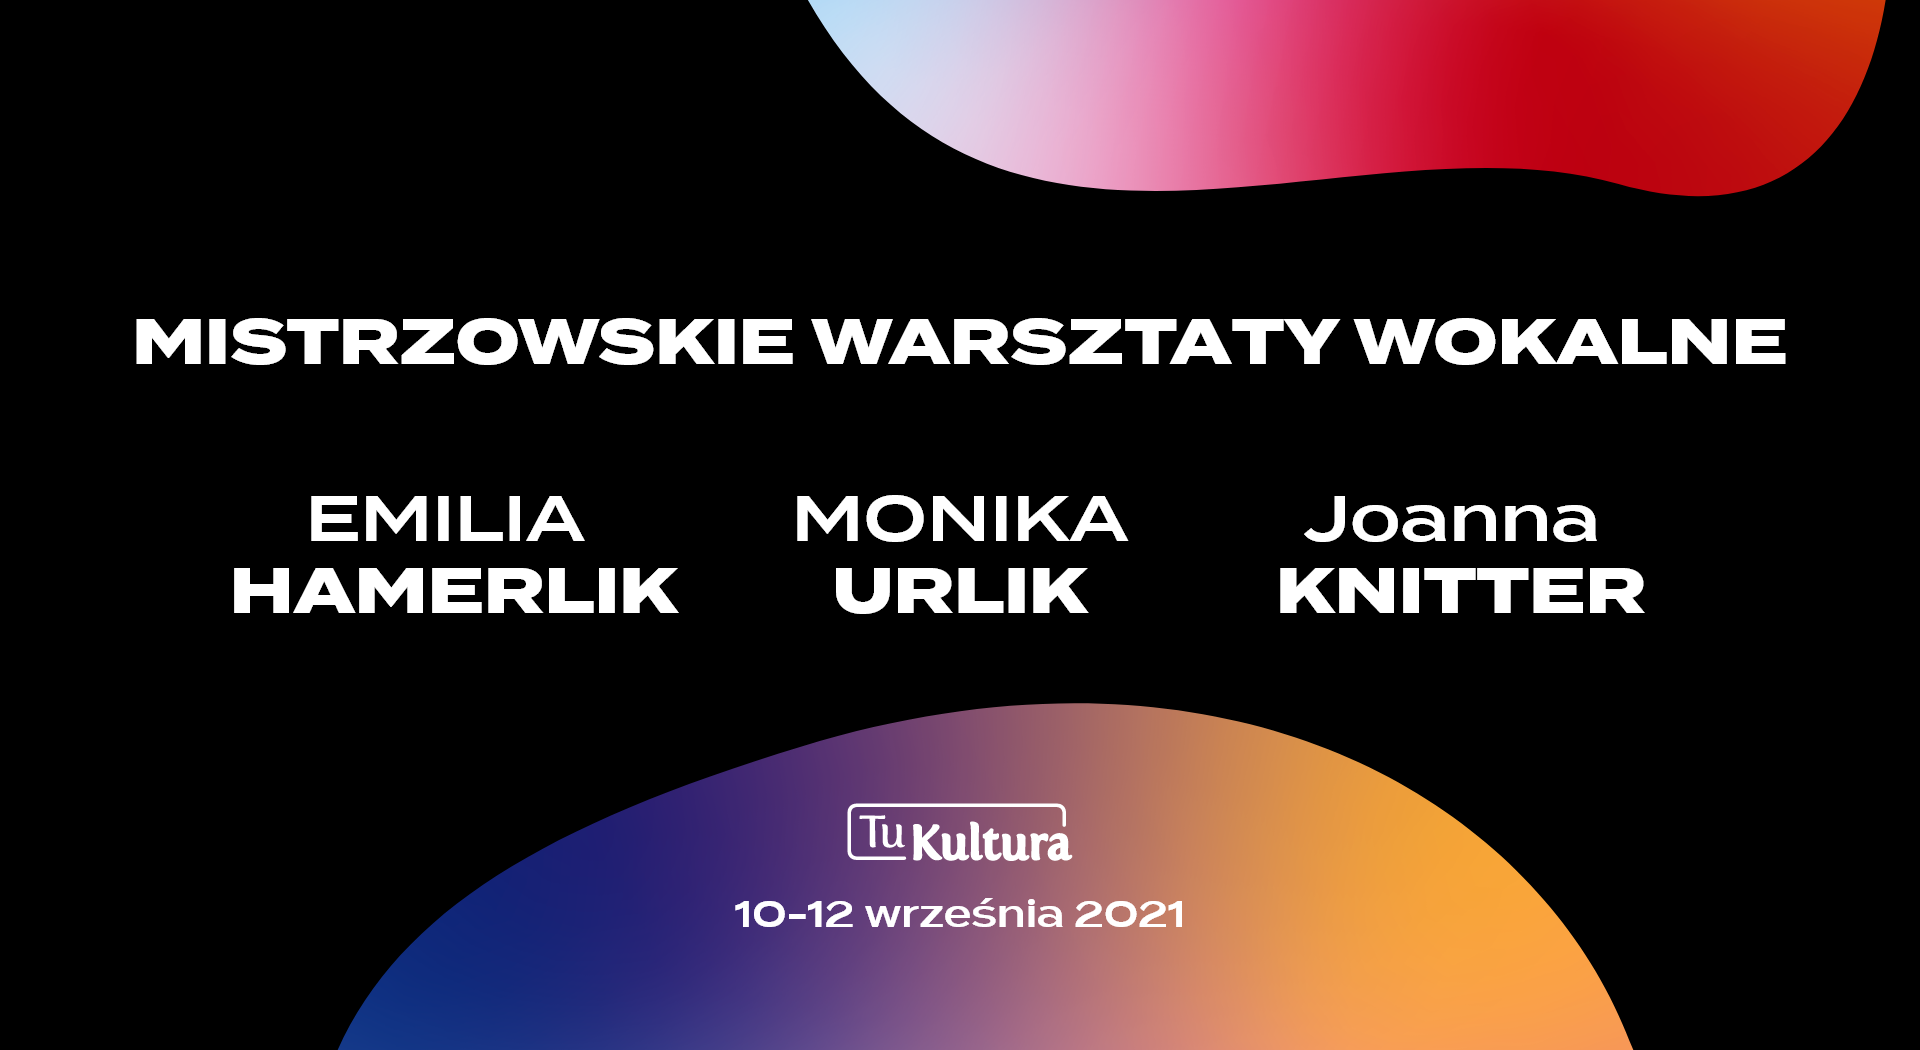 Mistrzowskie Warsztaty Wokalne w Słupsku w dniach 10-12 września 2021 r.